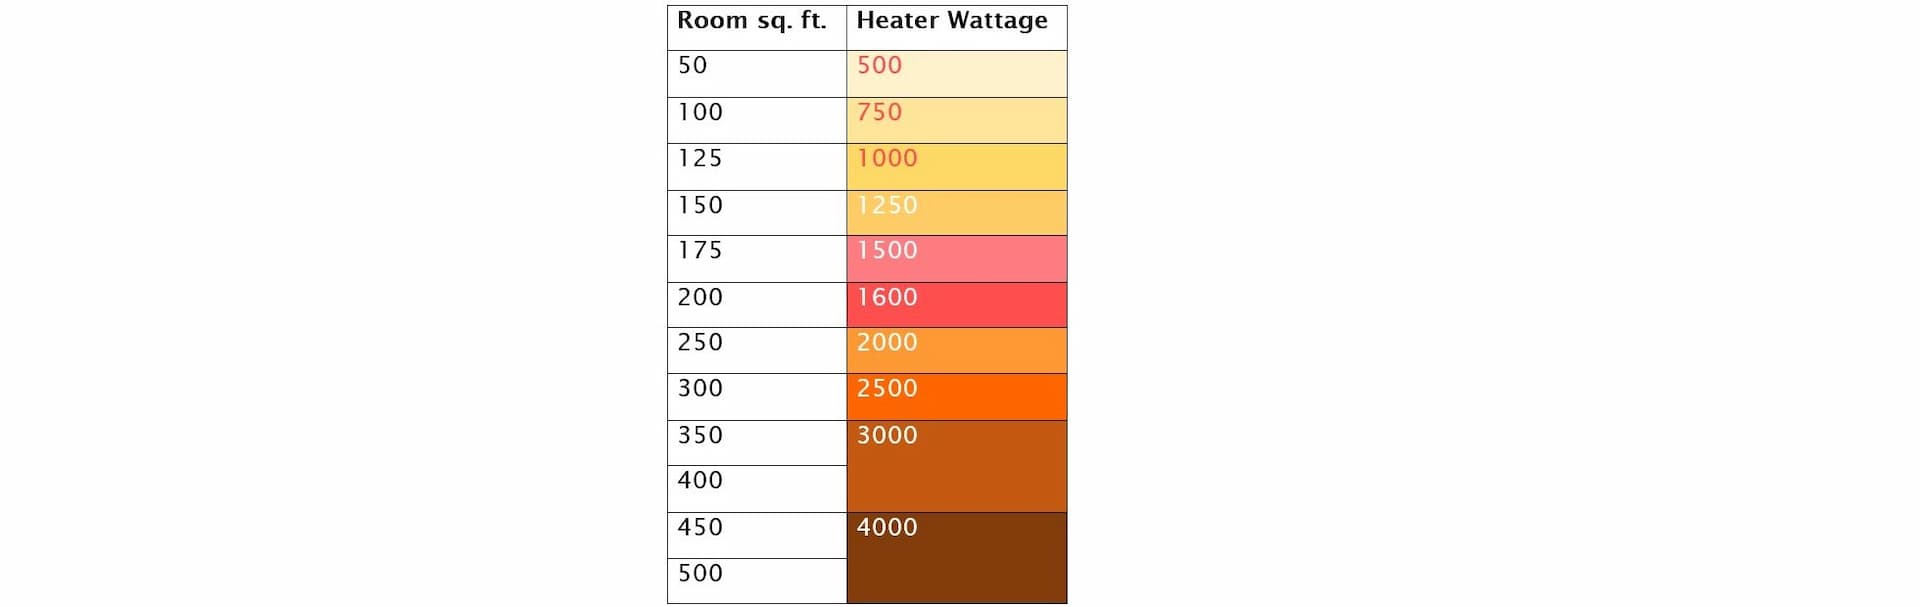 Heater wattage